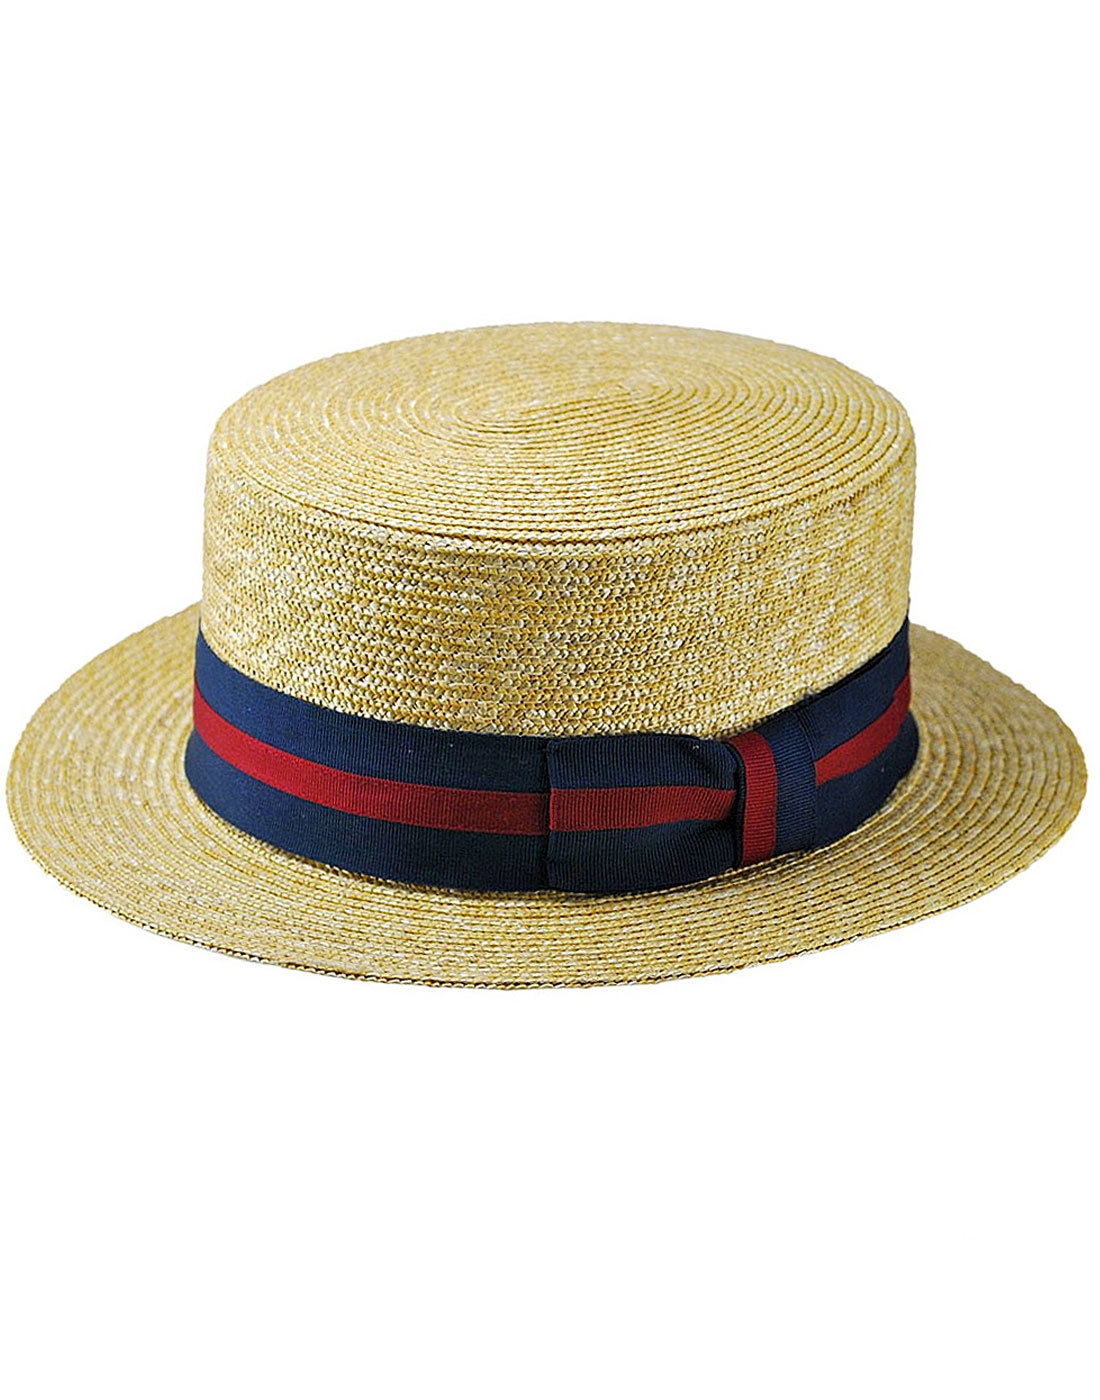 FAILSWORTH Men's Retro Oxford Straw Boater Hat